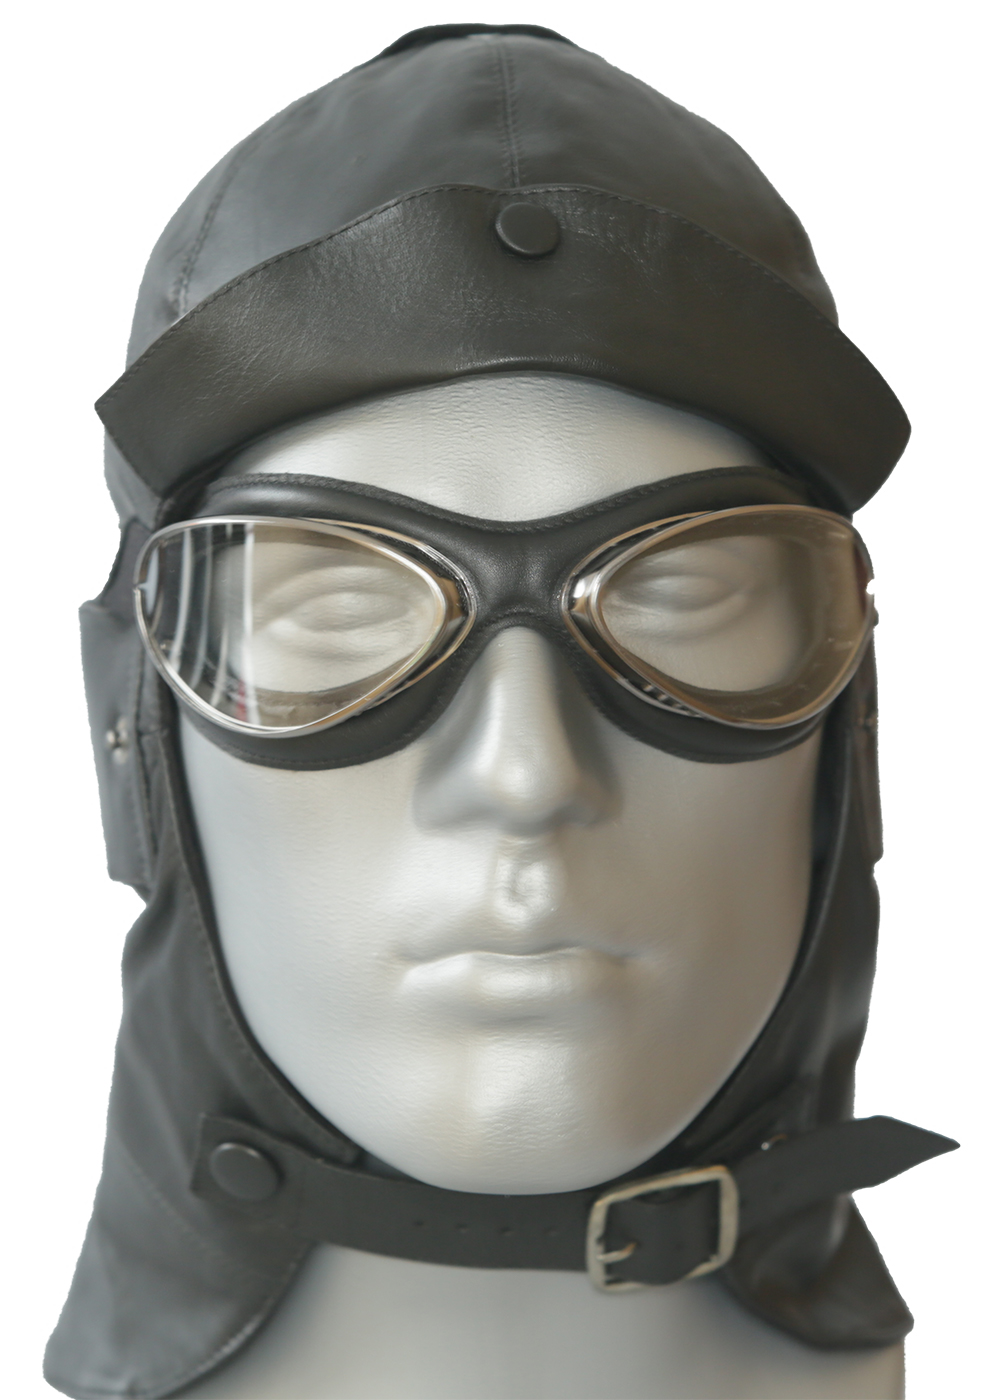 Aviator Brille in Chrom mit weicher Gesichtsauflage in schwarz Mod. 4602-MCN